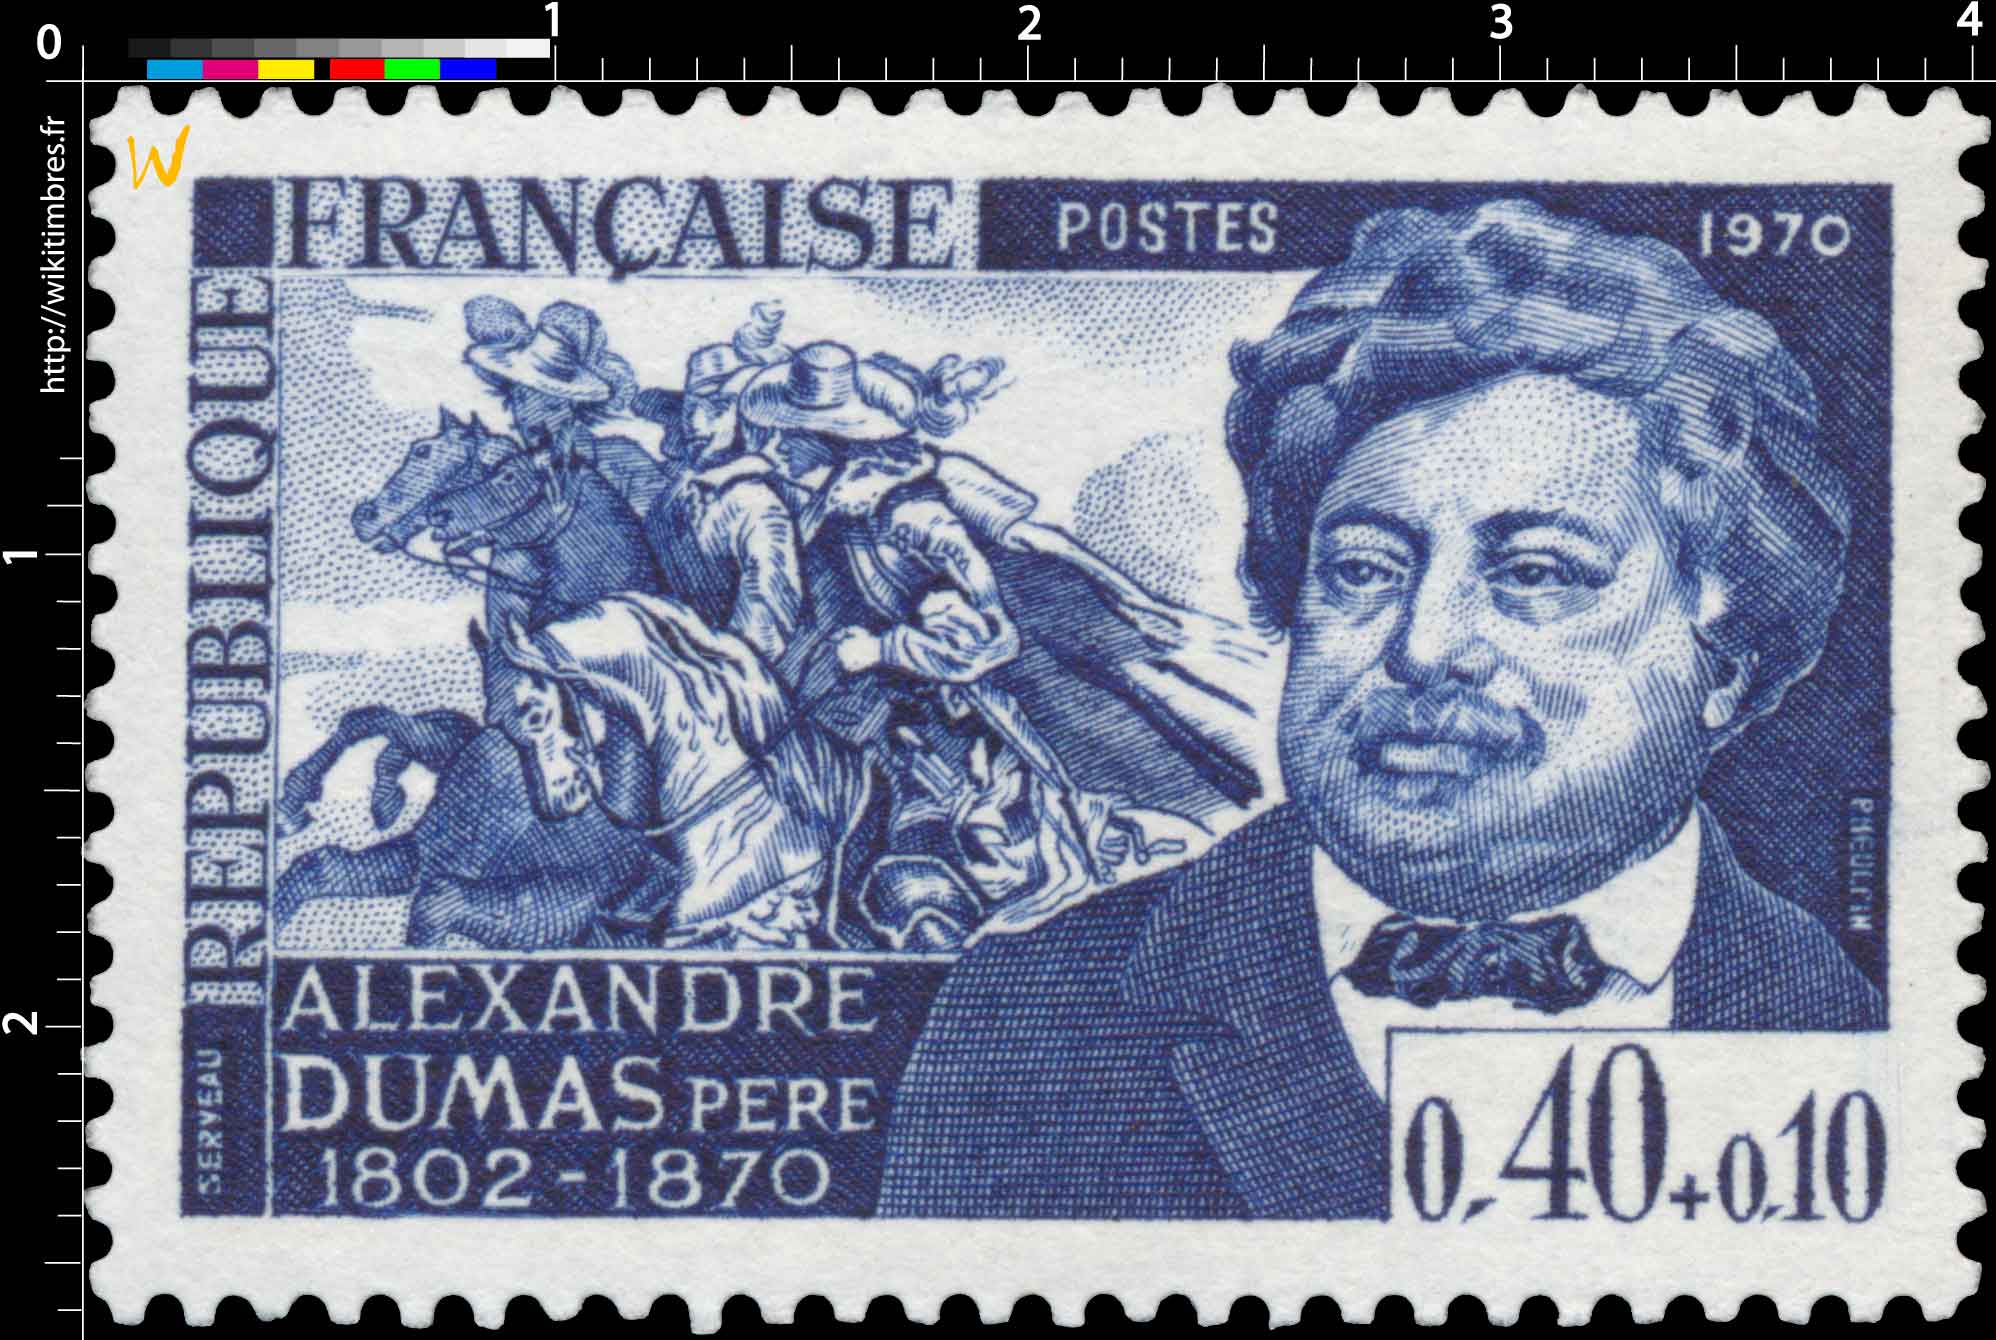 1970 ALEXANDRE DUMAS PÈRE 1802-1870